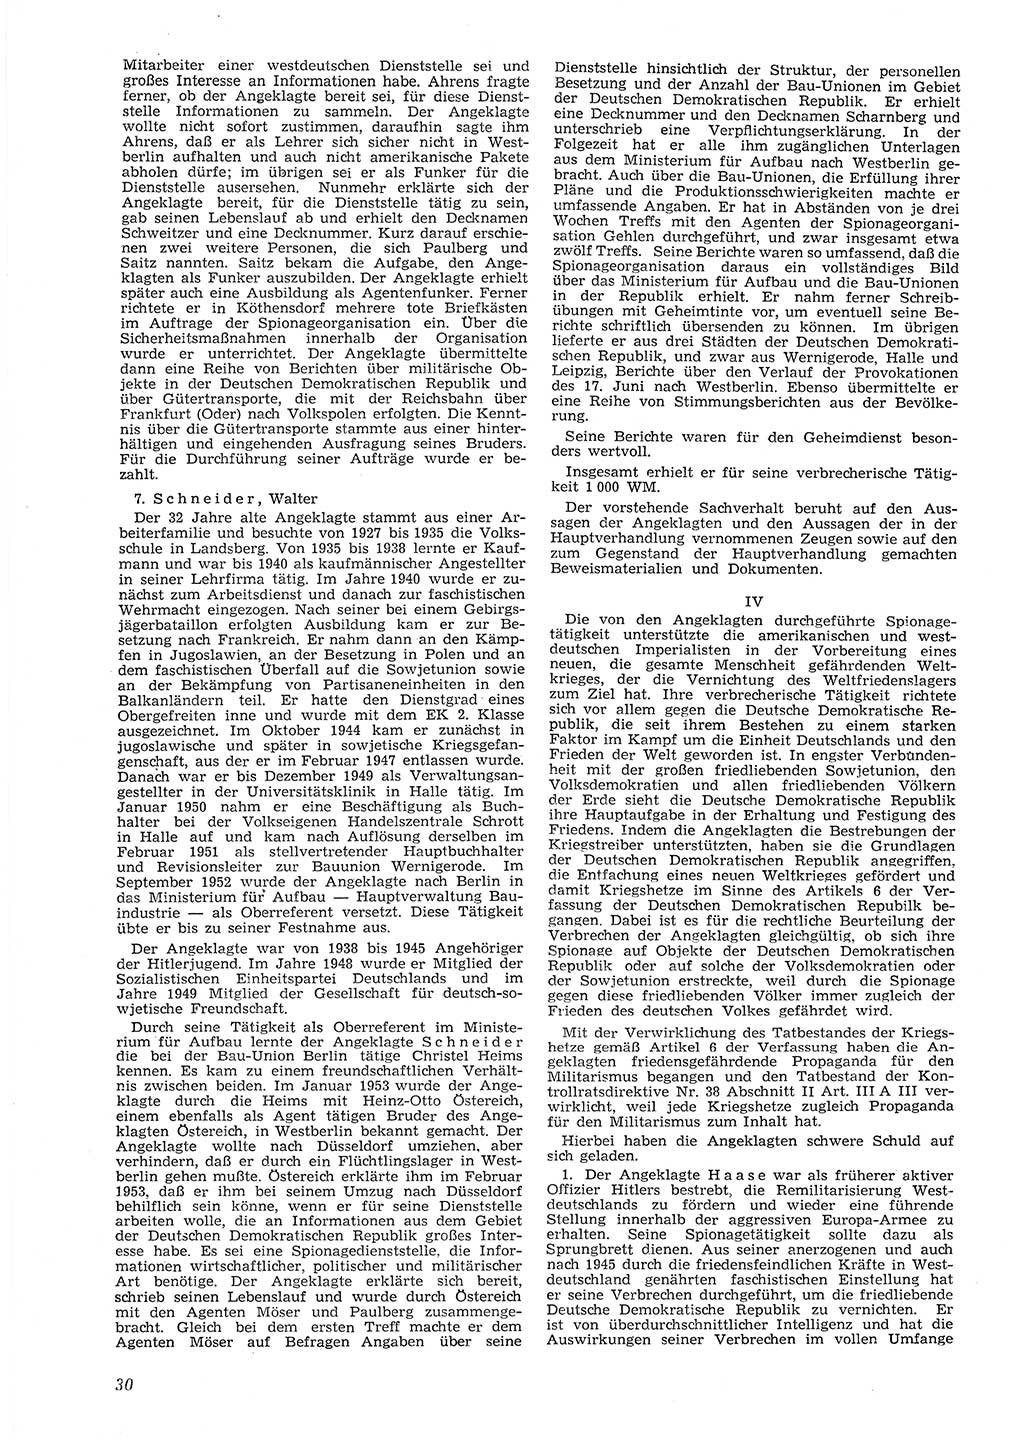 Neue Justiz (NJ), Zeitschrift für Recht und Rechtswissenschaft [Deutsche Demokratische Republik (DDR)], 8. Jahrgang 1954, Seite 30 (NJ DDR 1954, S. 30)